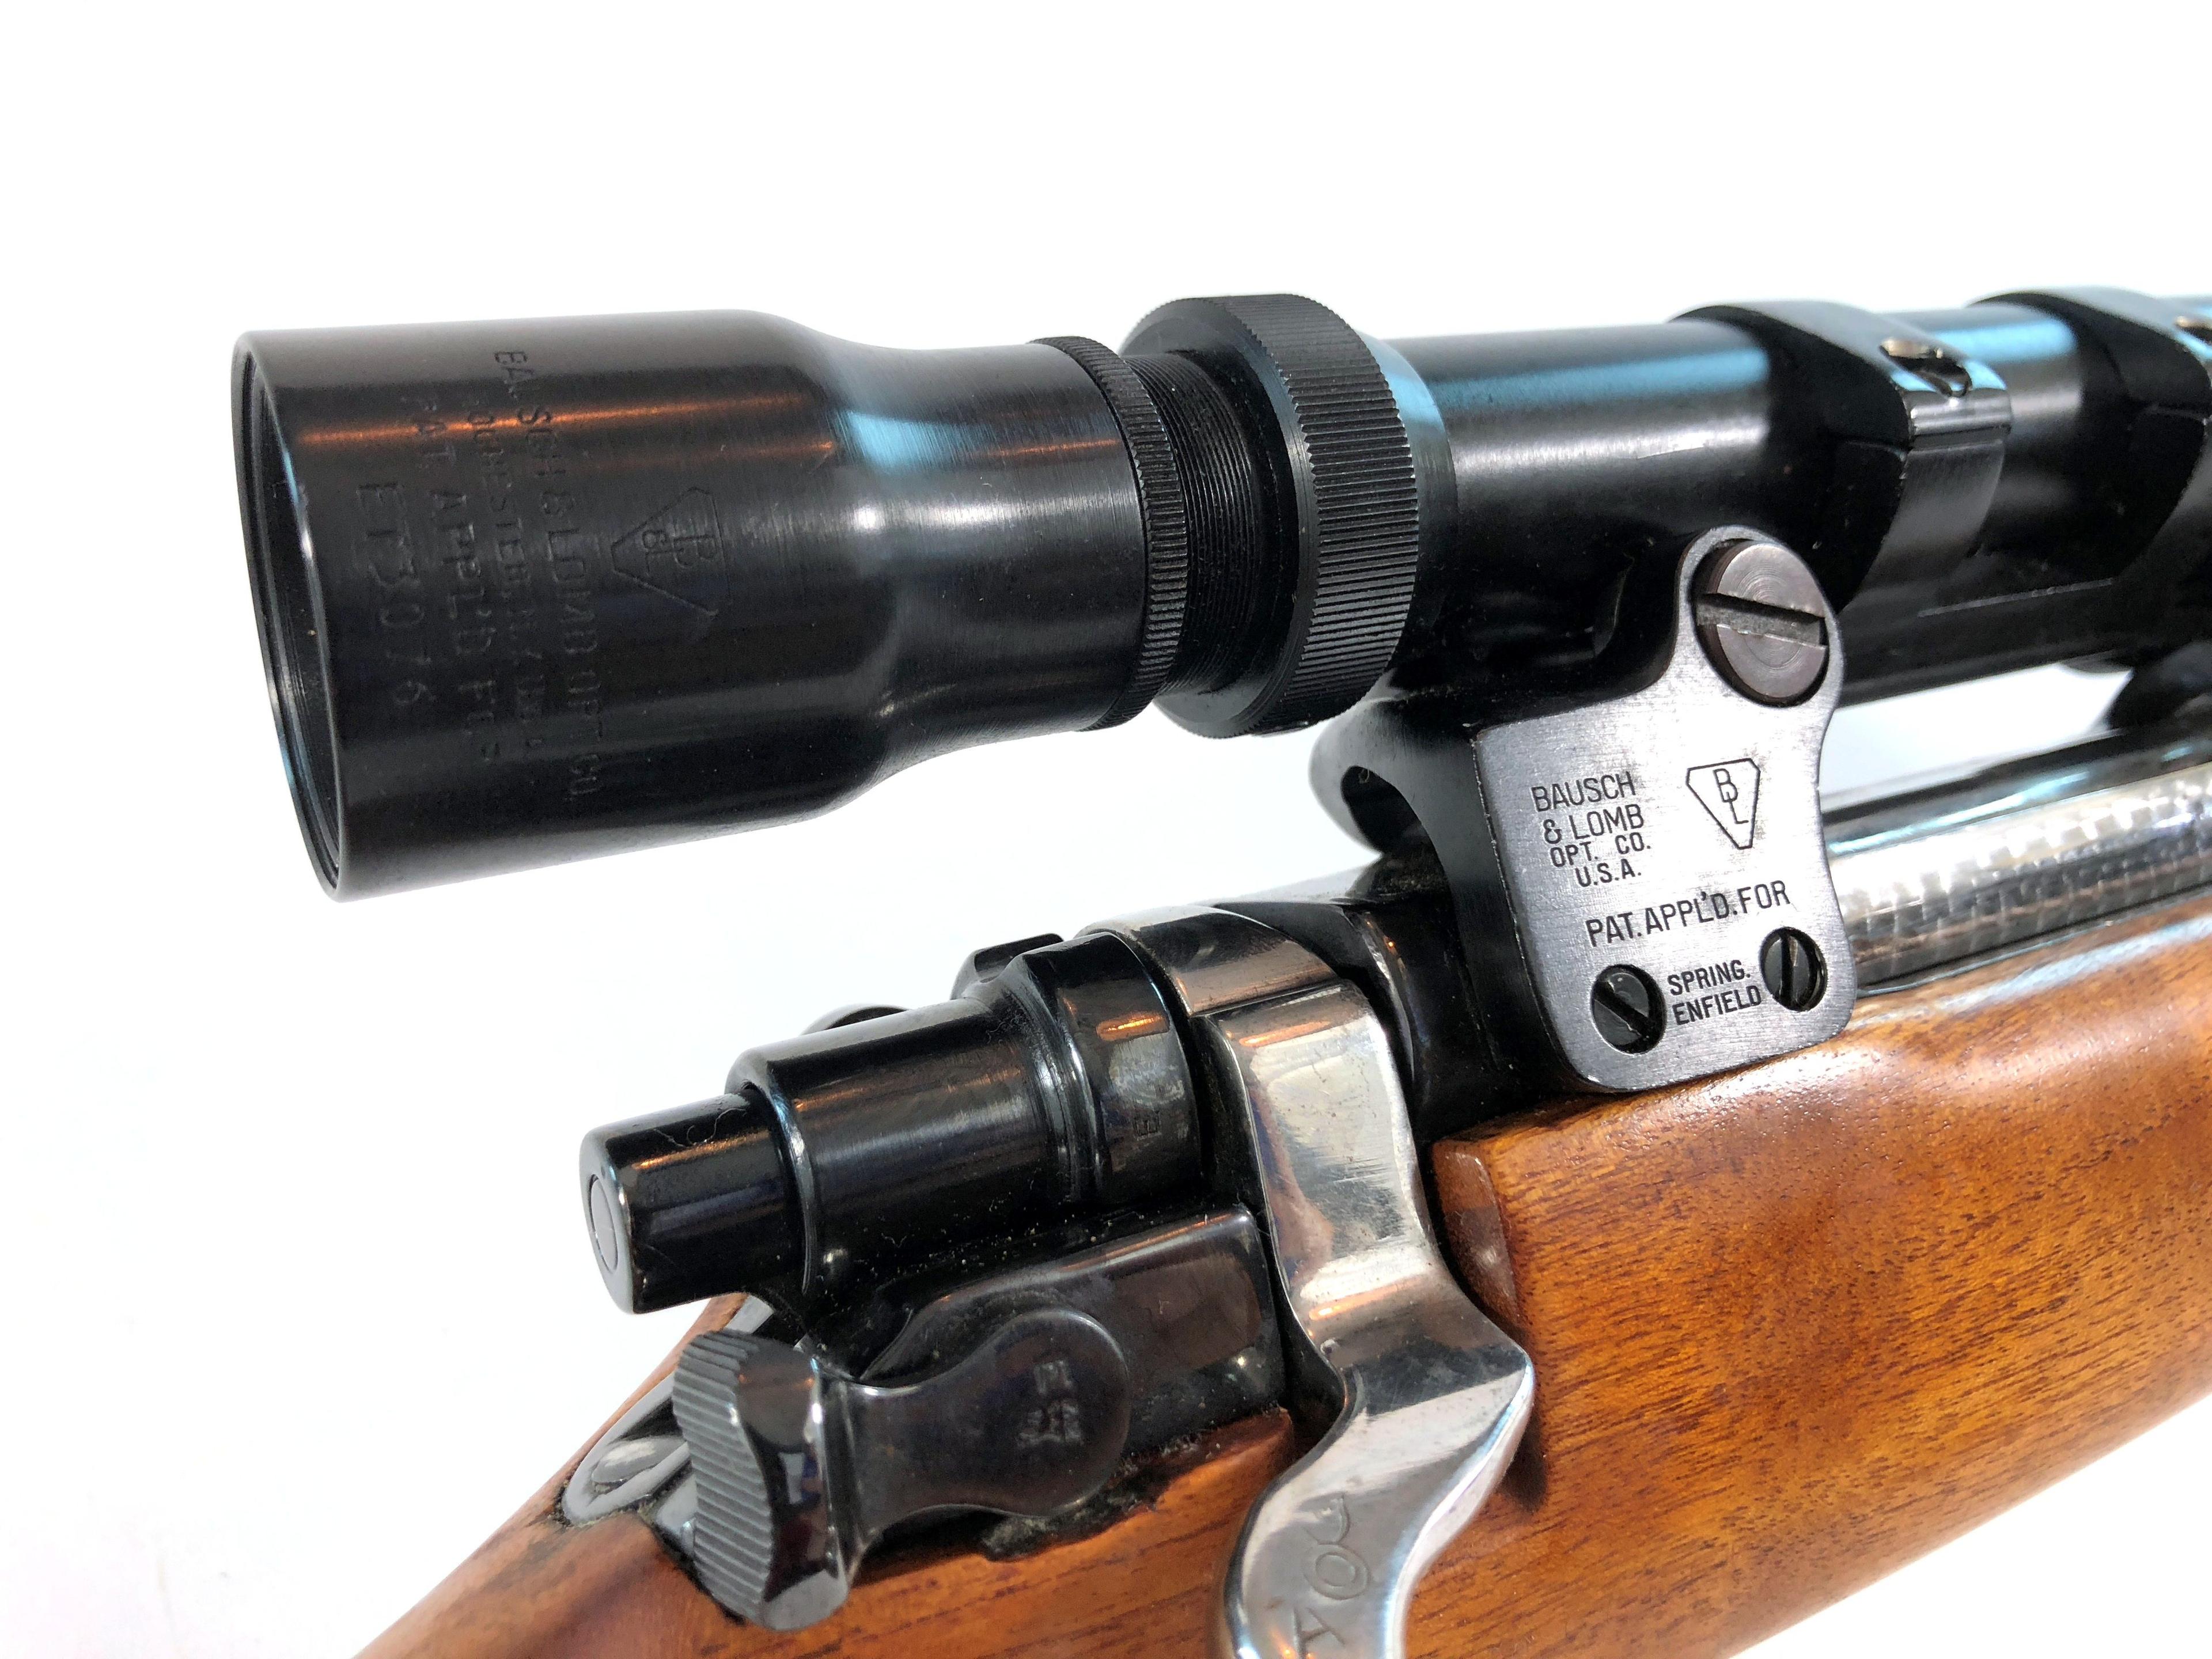 Custom Built Bolt Action Gun Caliber 30-06 Rifle with Bausch & Lomb Scope